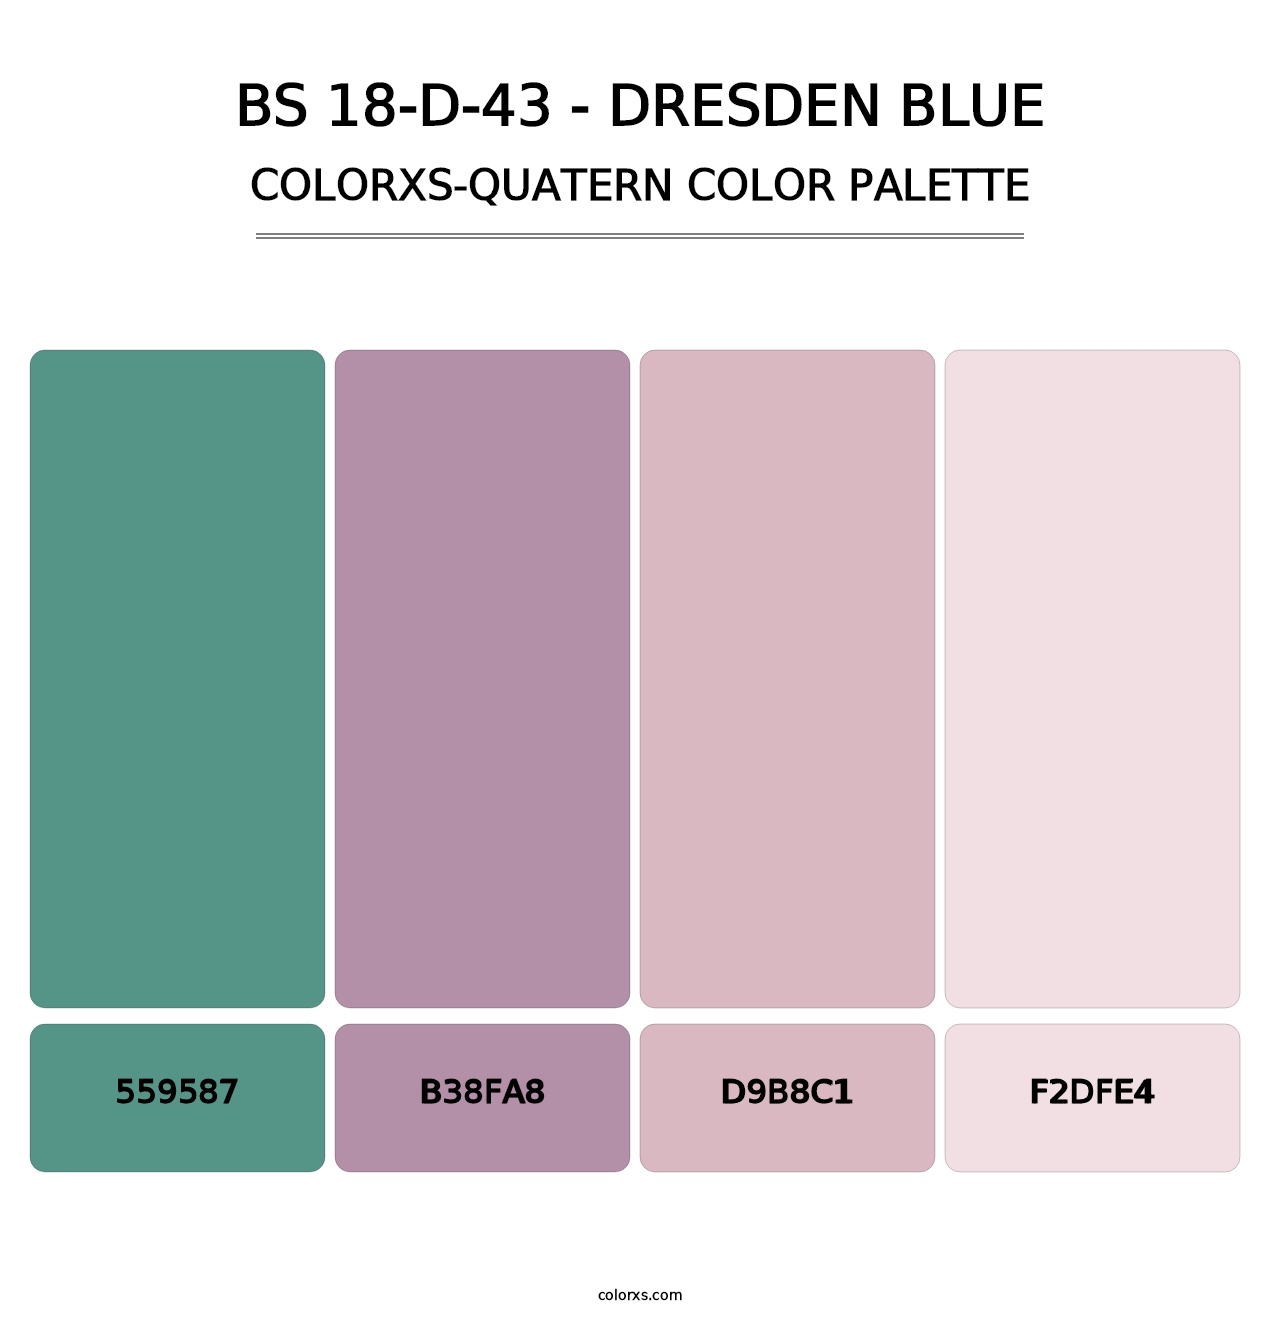 BS 18-D-43 - Dresden Blue - Colorxs Quatern Palette